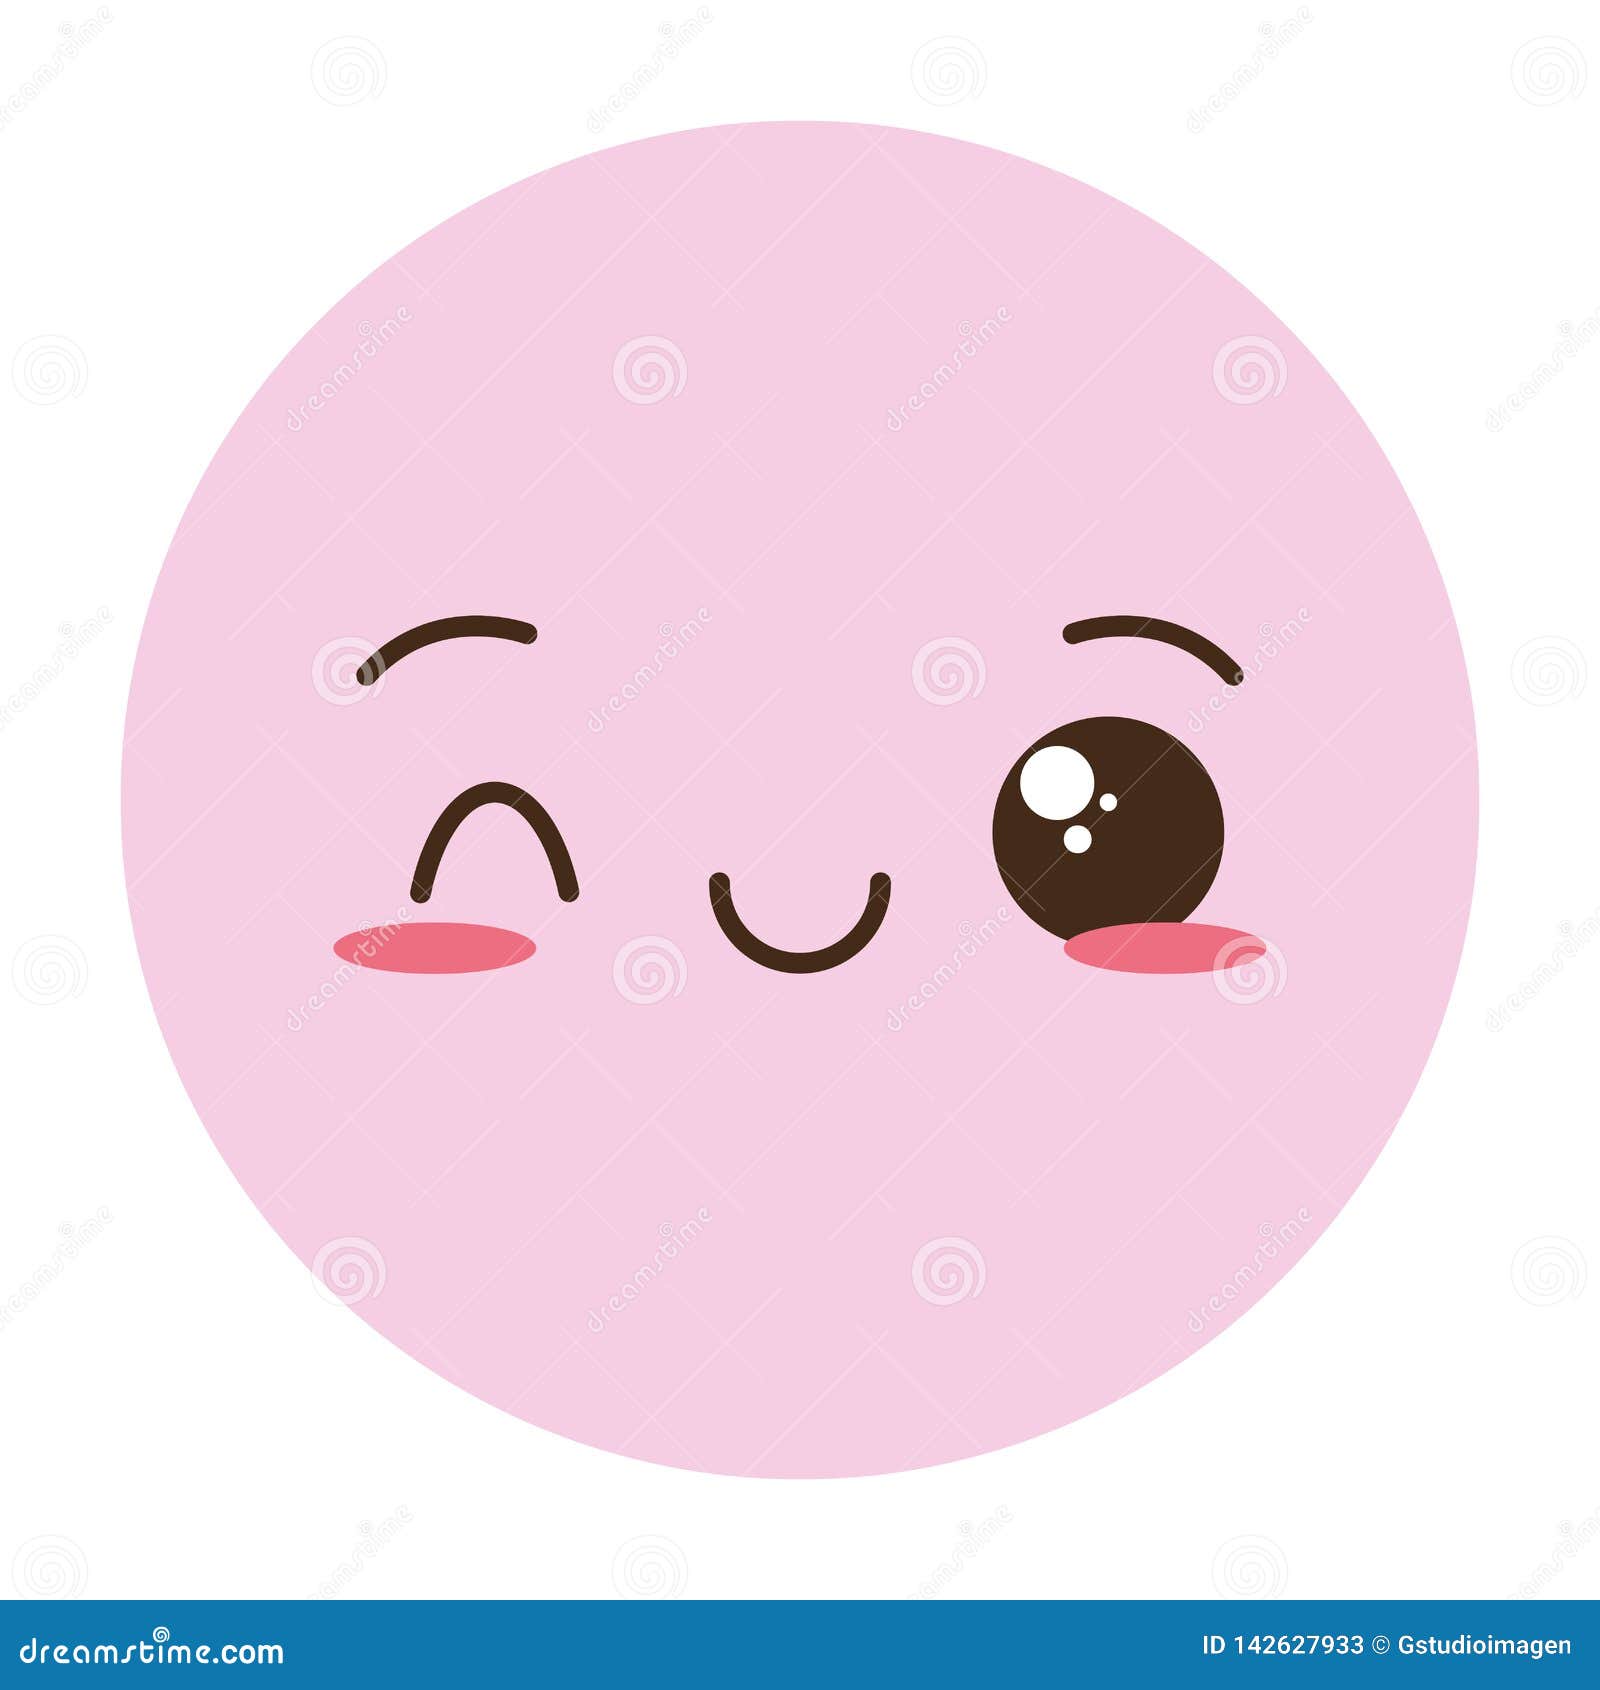 Kawaii emoji cartoon face stock vector. Illustration of funny - 142627933